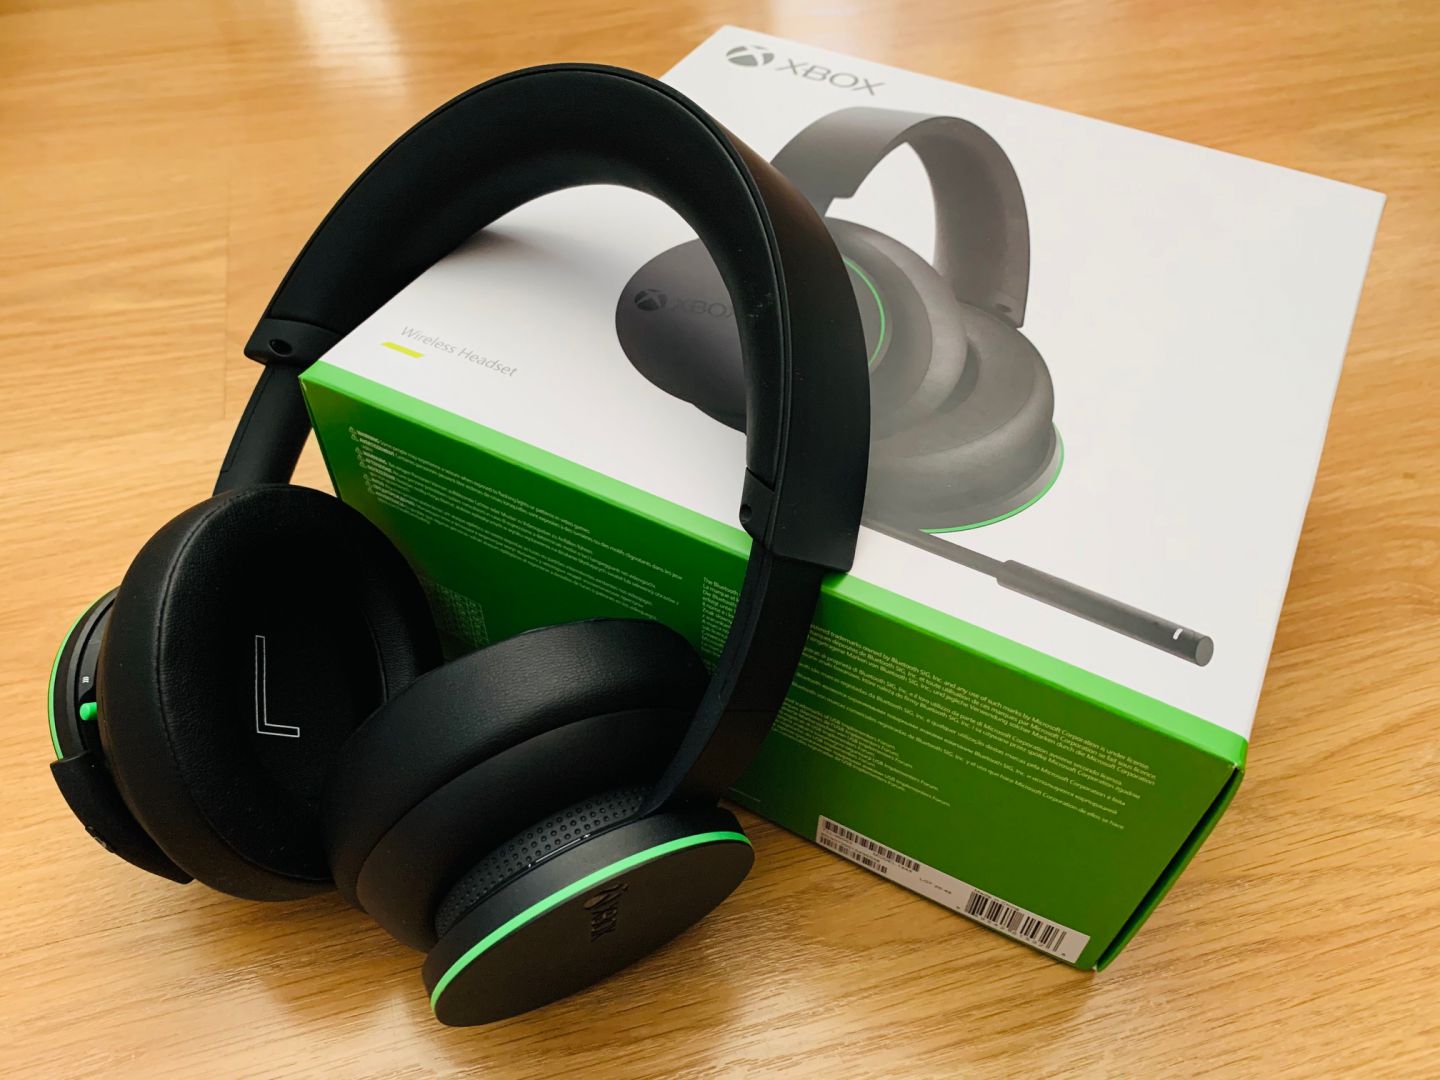 Analizamos a fondo los nuevos Auriculares inalámbricos de Xbox - Spoiler: Son geniales. Os traemos nuestras impresiones de los esperados Auriculares inalámbricos de Xbox oficiales.